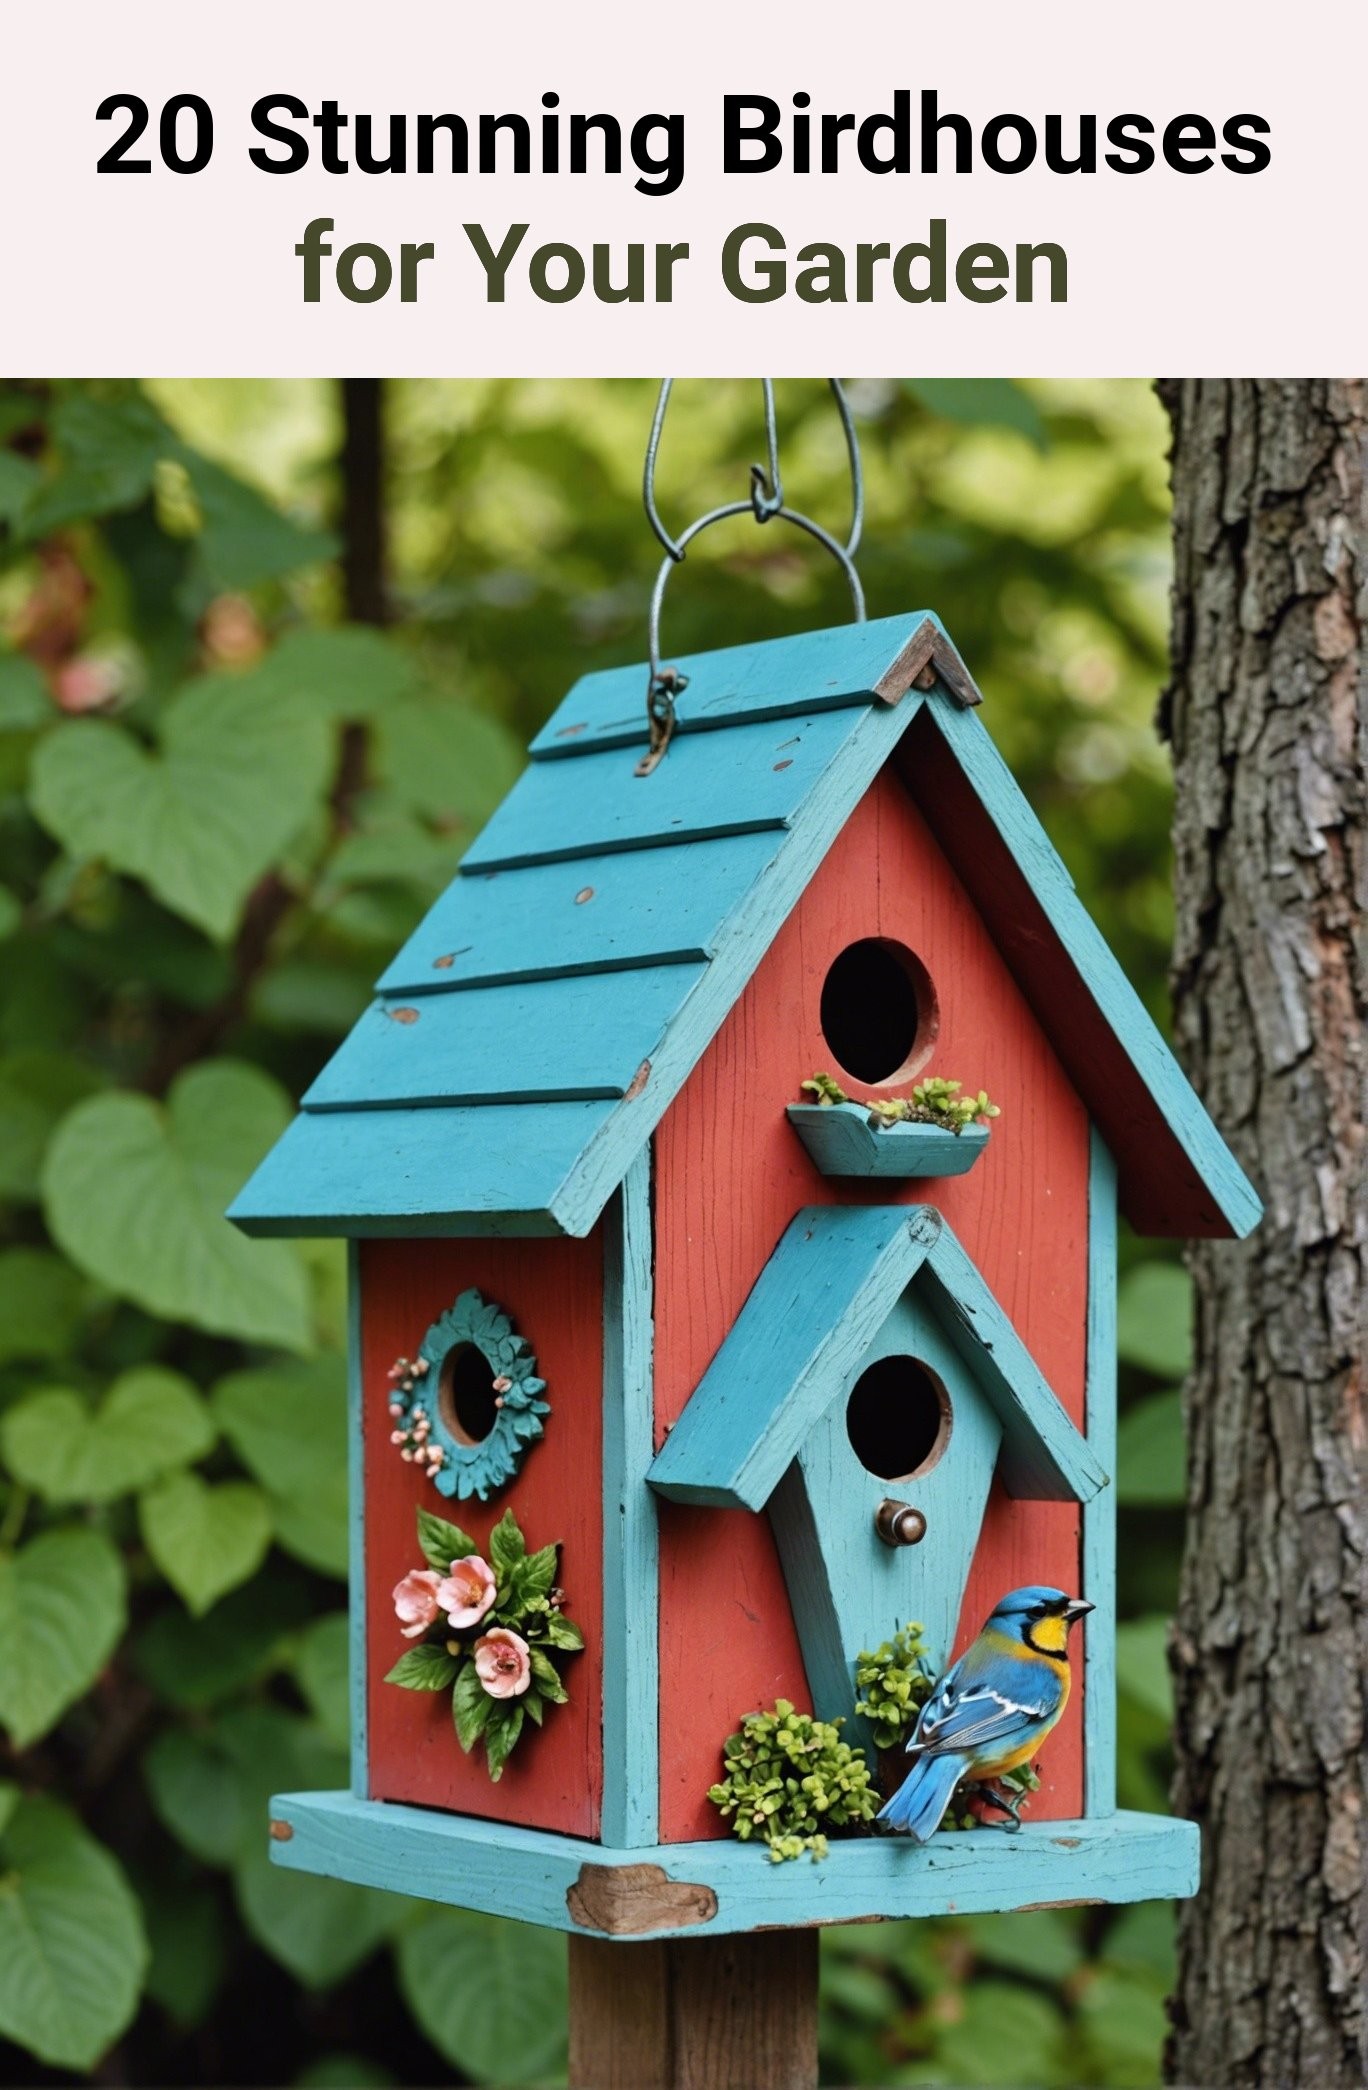 20 Stunning Birdhouses for Your Garden